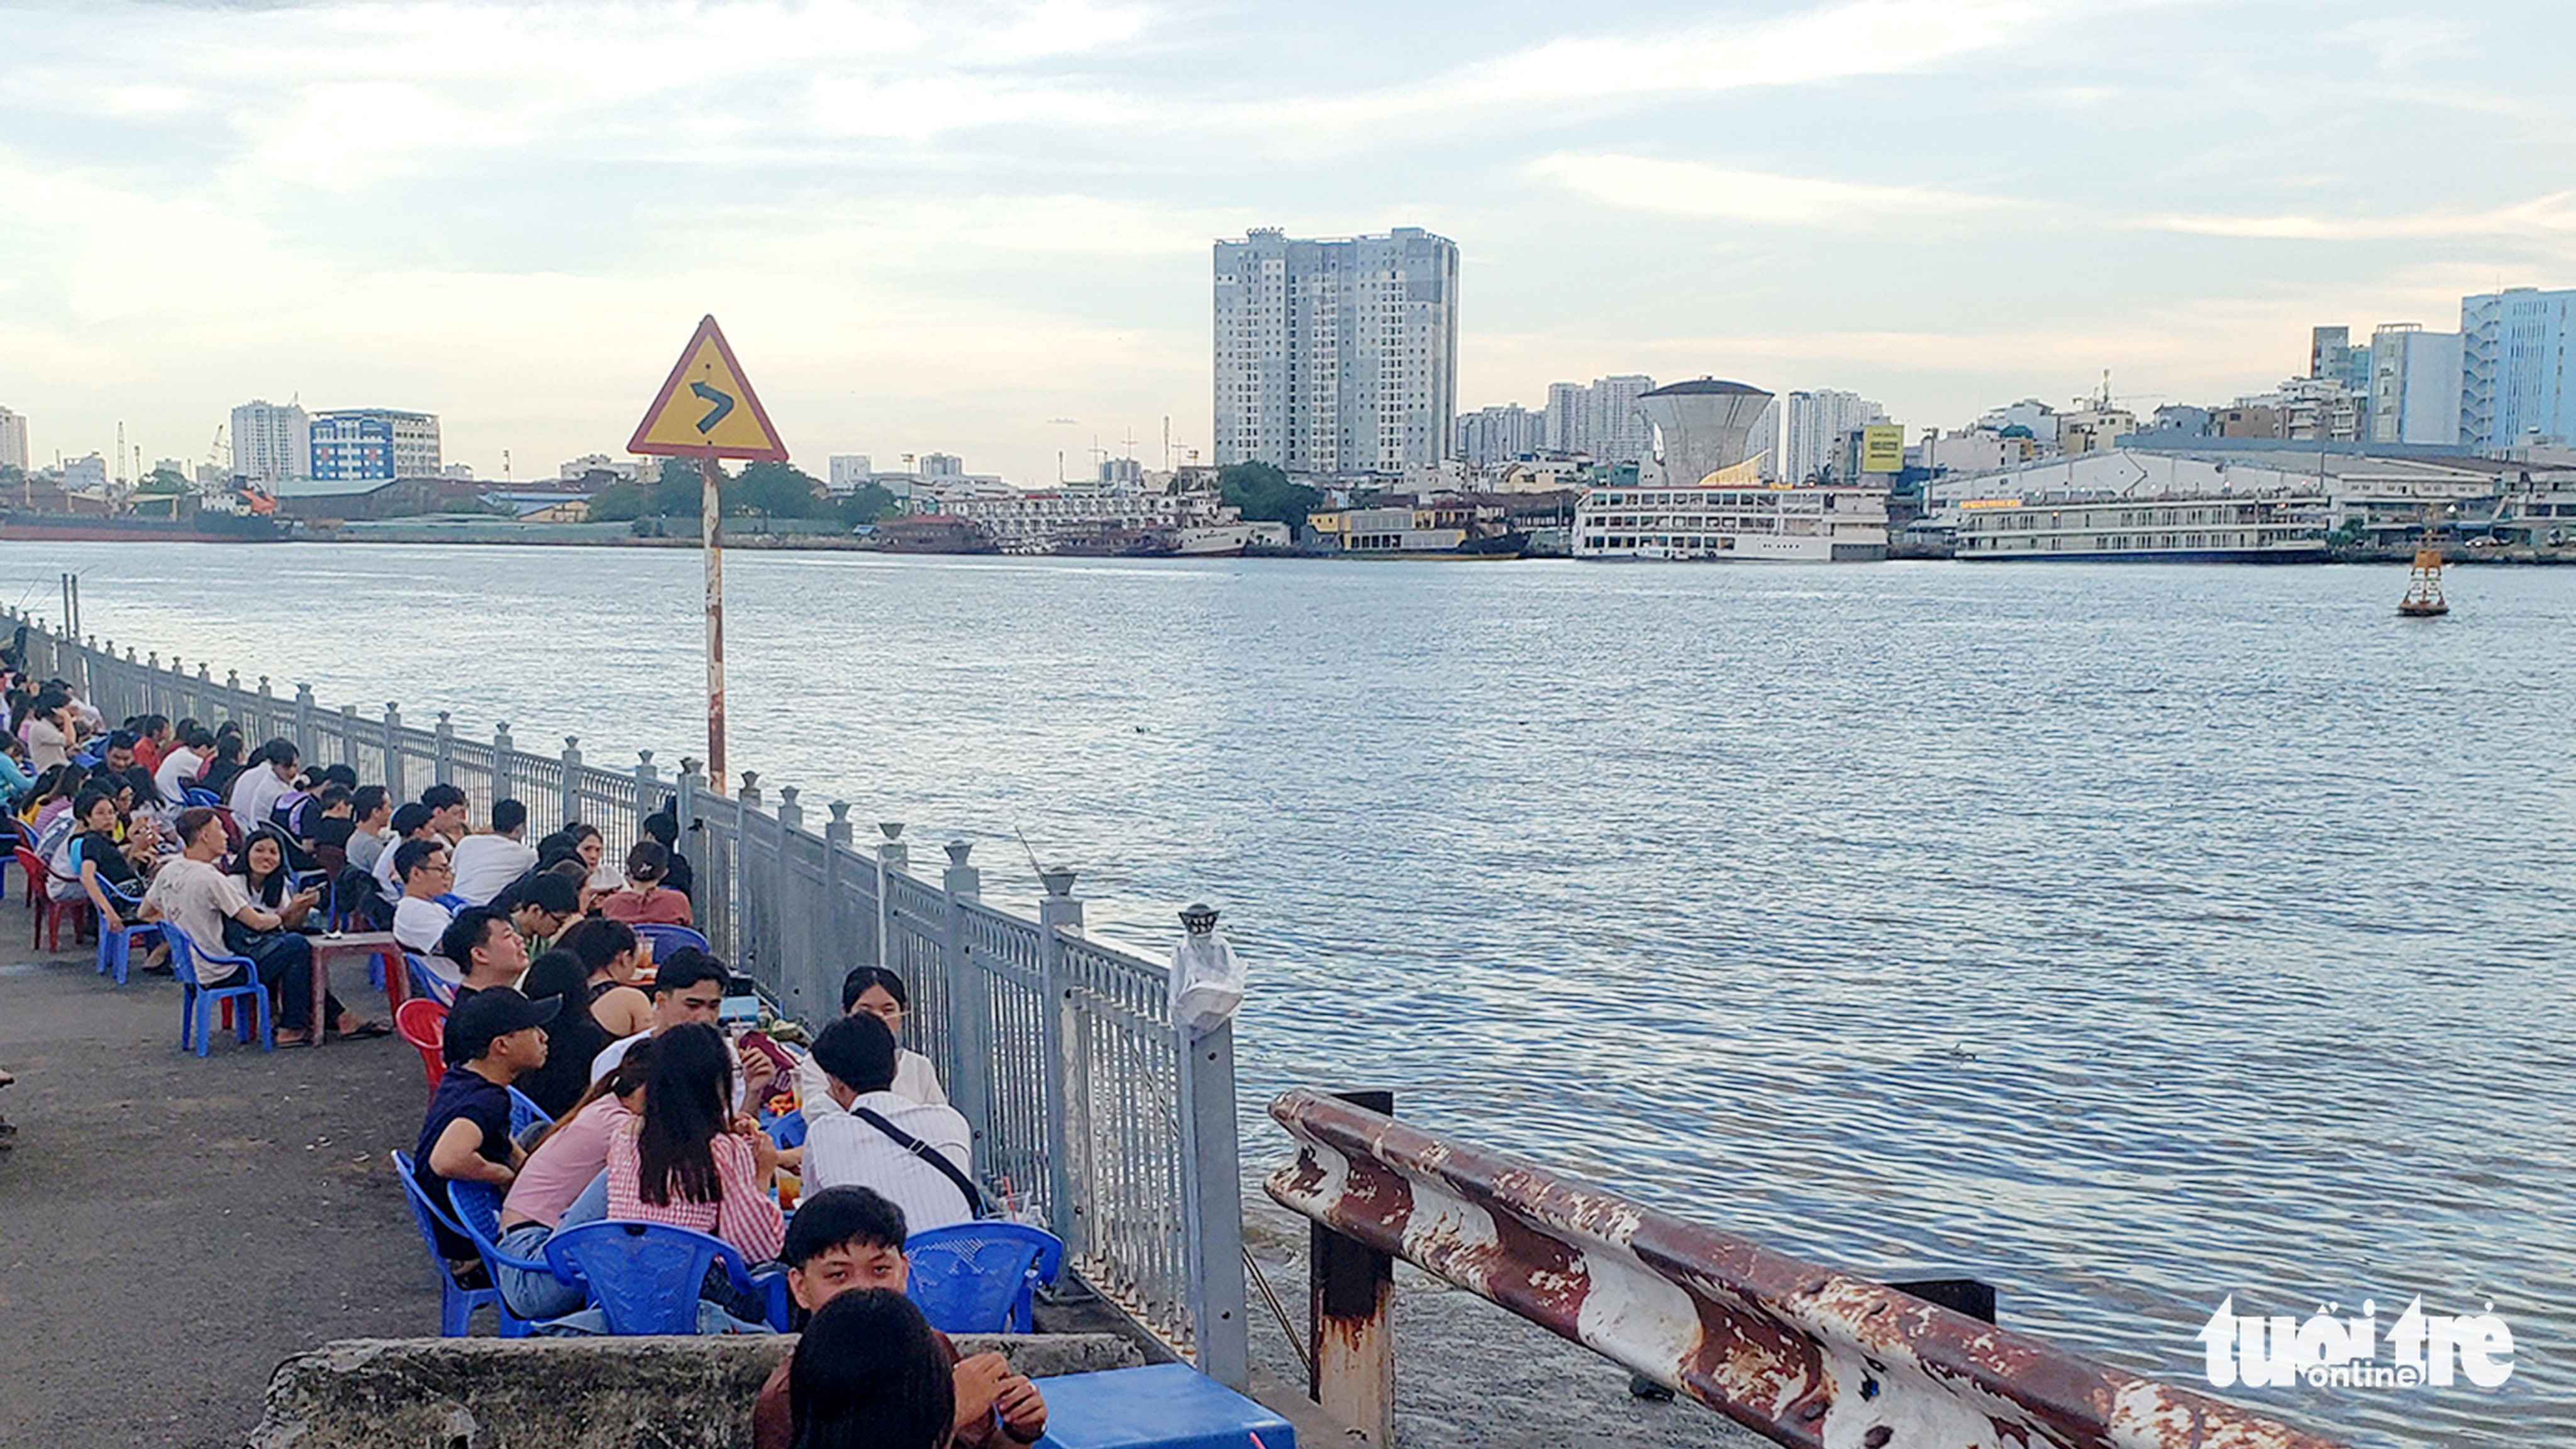 Khôi phục bản sắc đô thị sông nước của Sài Gòn - TP.HCM - Ảnh 1.